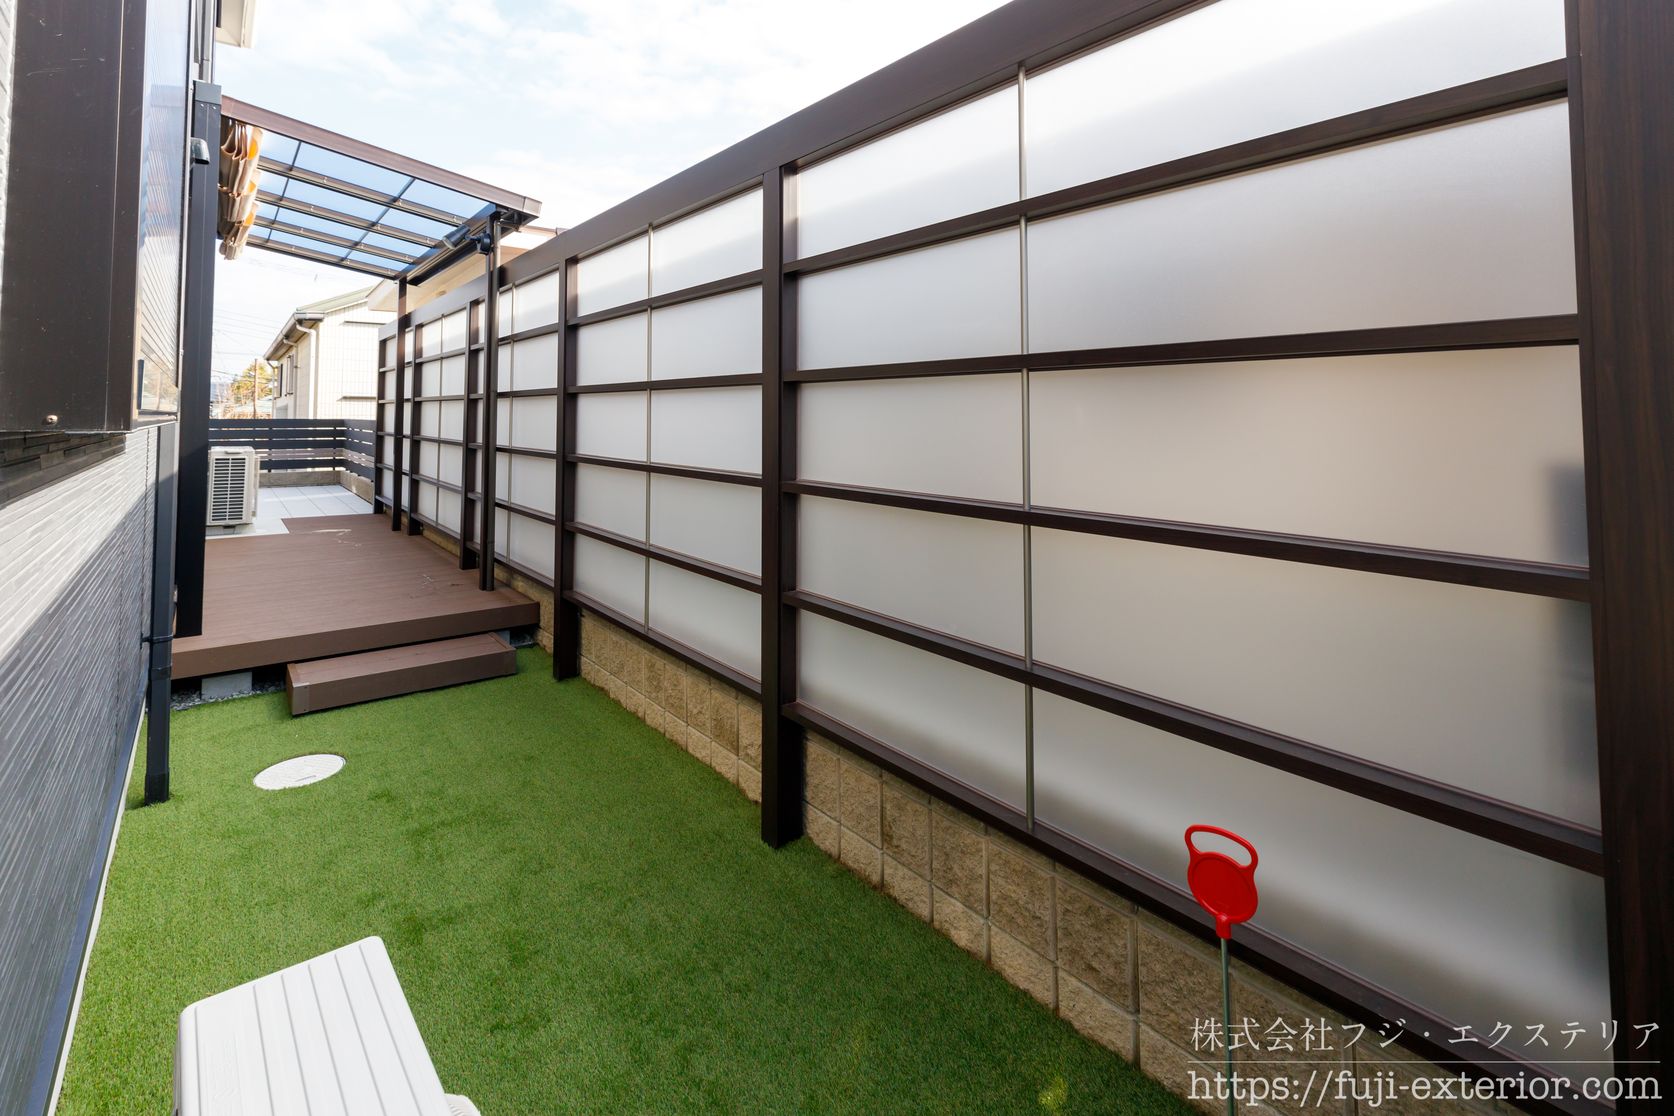 裏庭のリフォーム施工事例。ウッドデッキ + テラス屋根 + 人工芝 + 目隠しフェンスでプライベート空間を作りました。